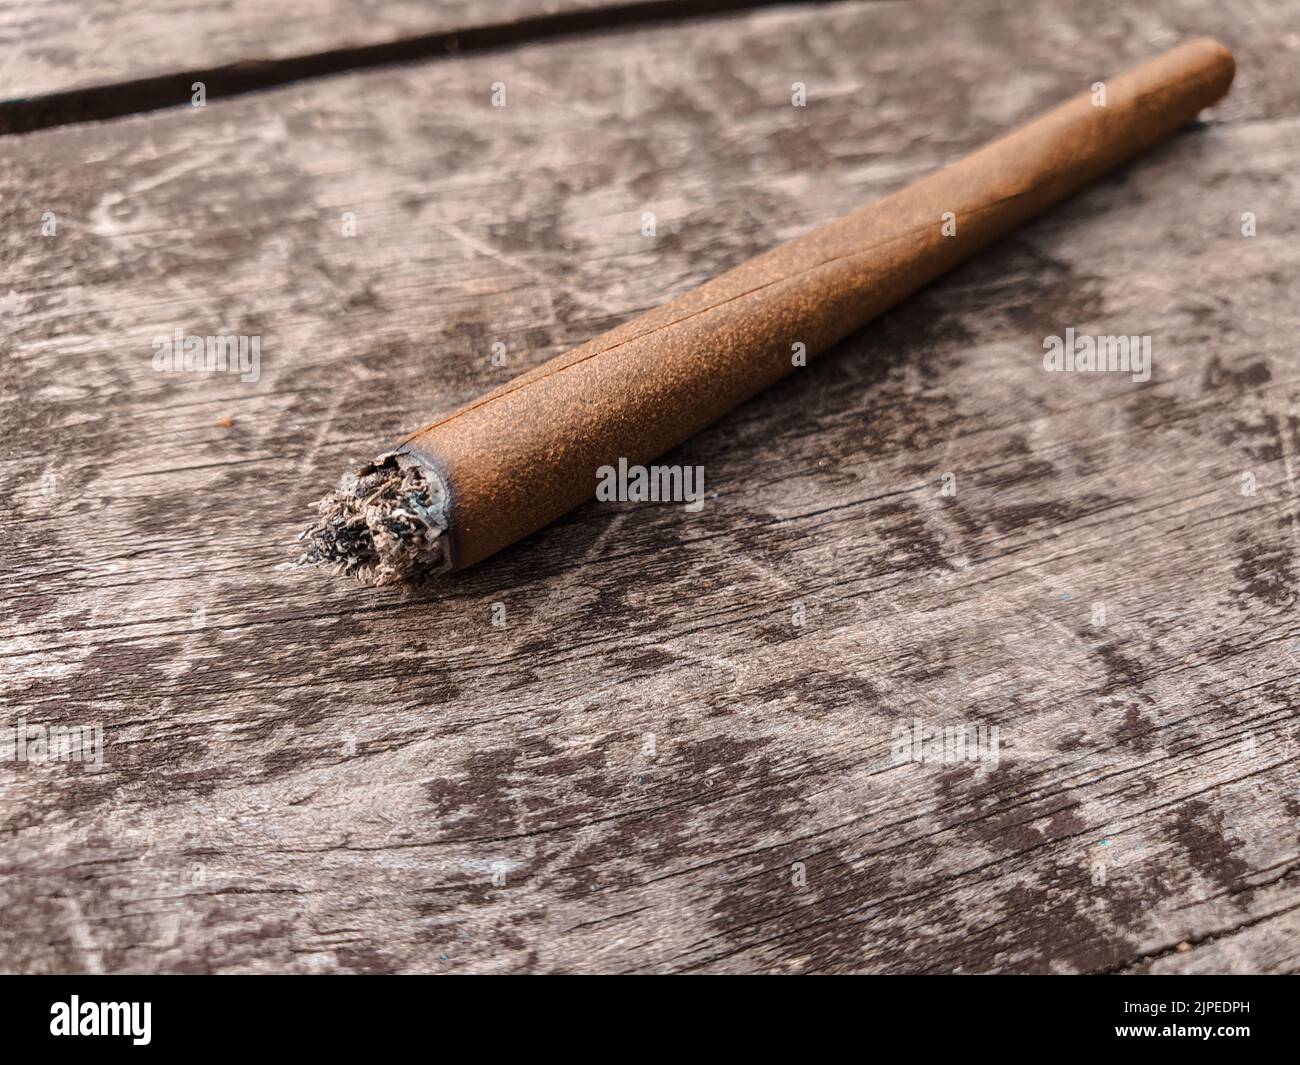 Détail d'un joint éclairé de marijuana ou de mauvaise herbe sur une table en bois marron à l'extérieur. Banque D'Images